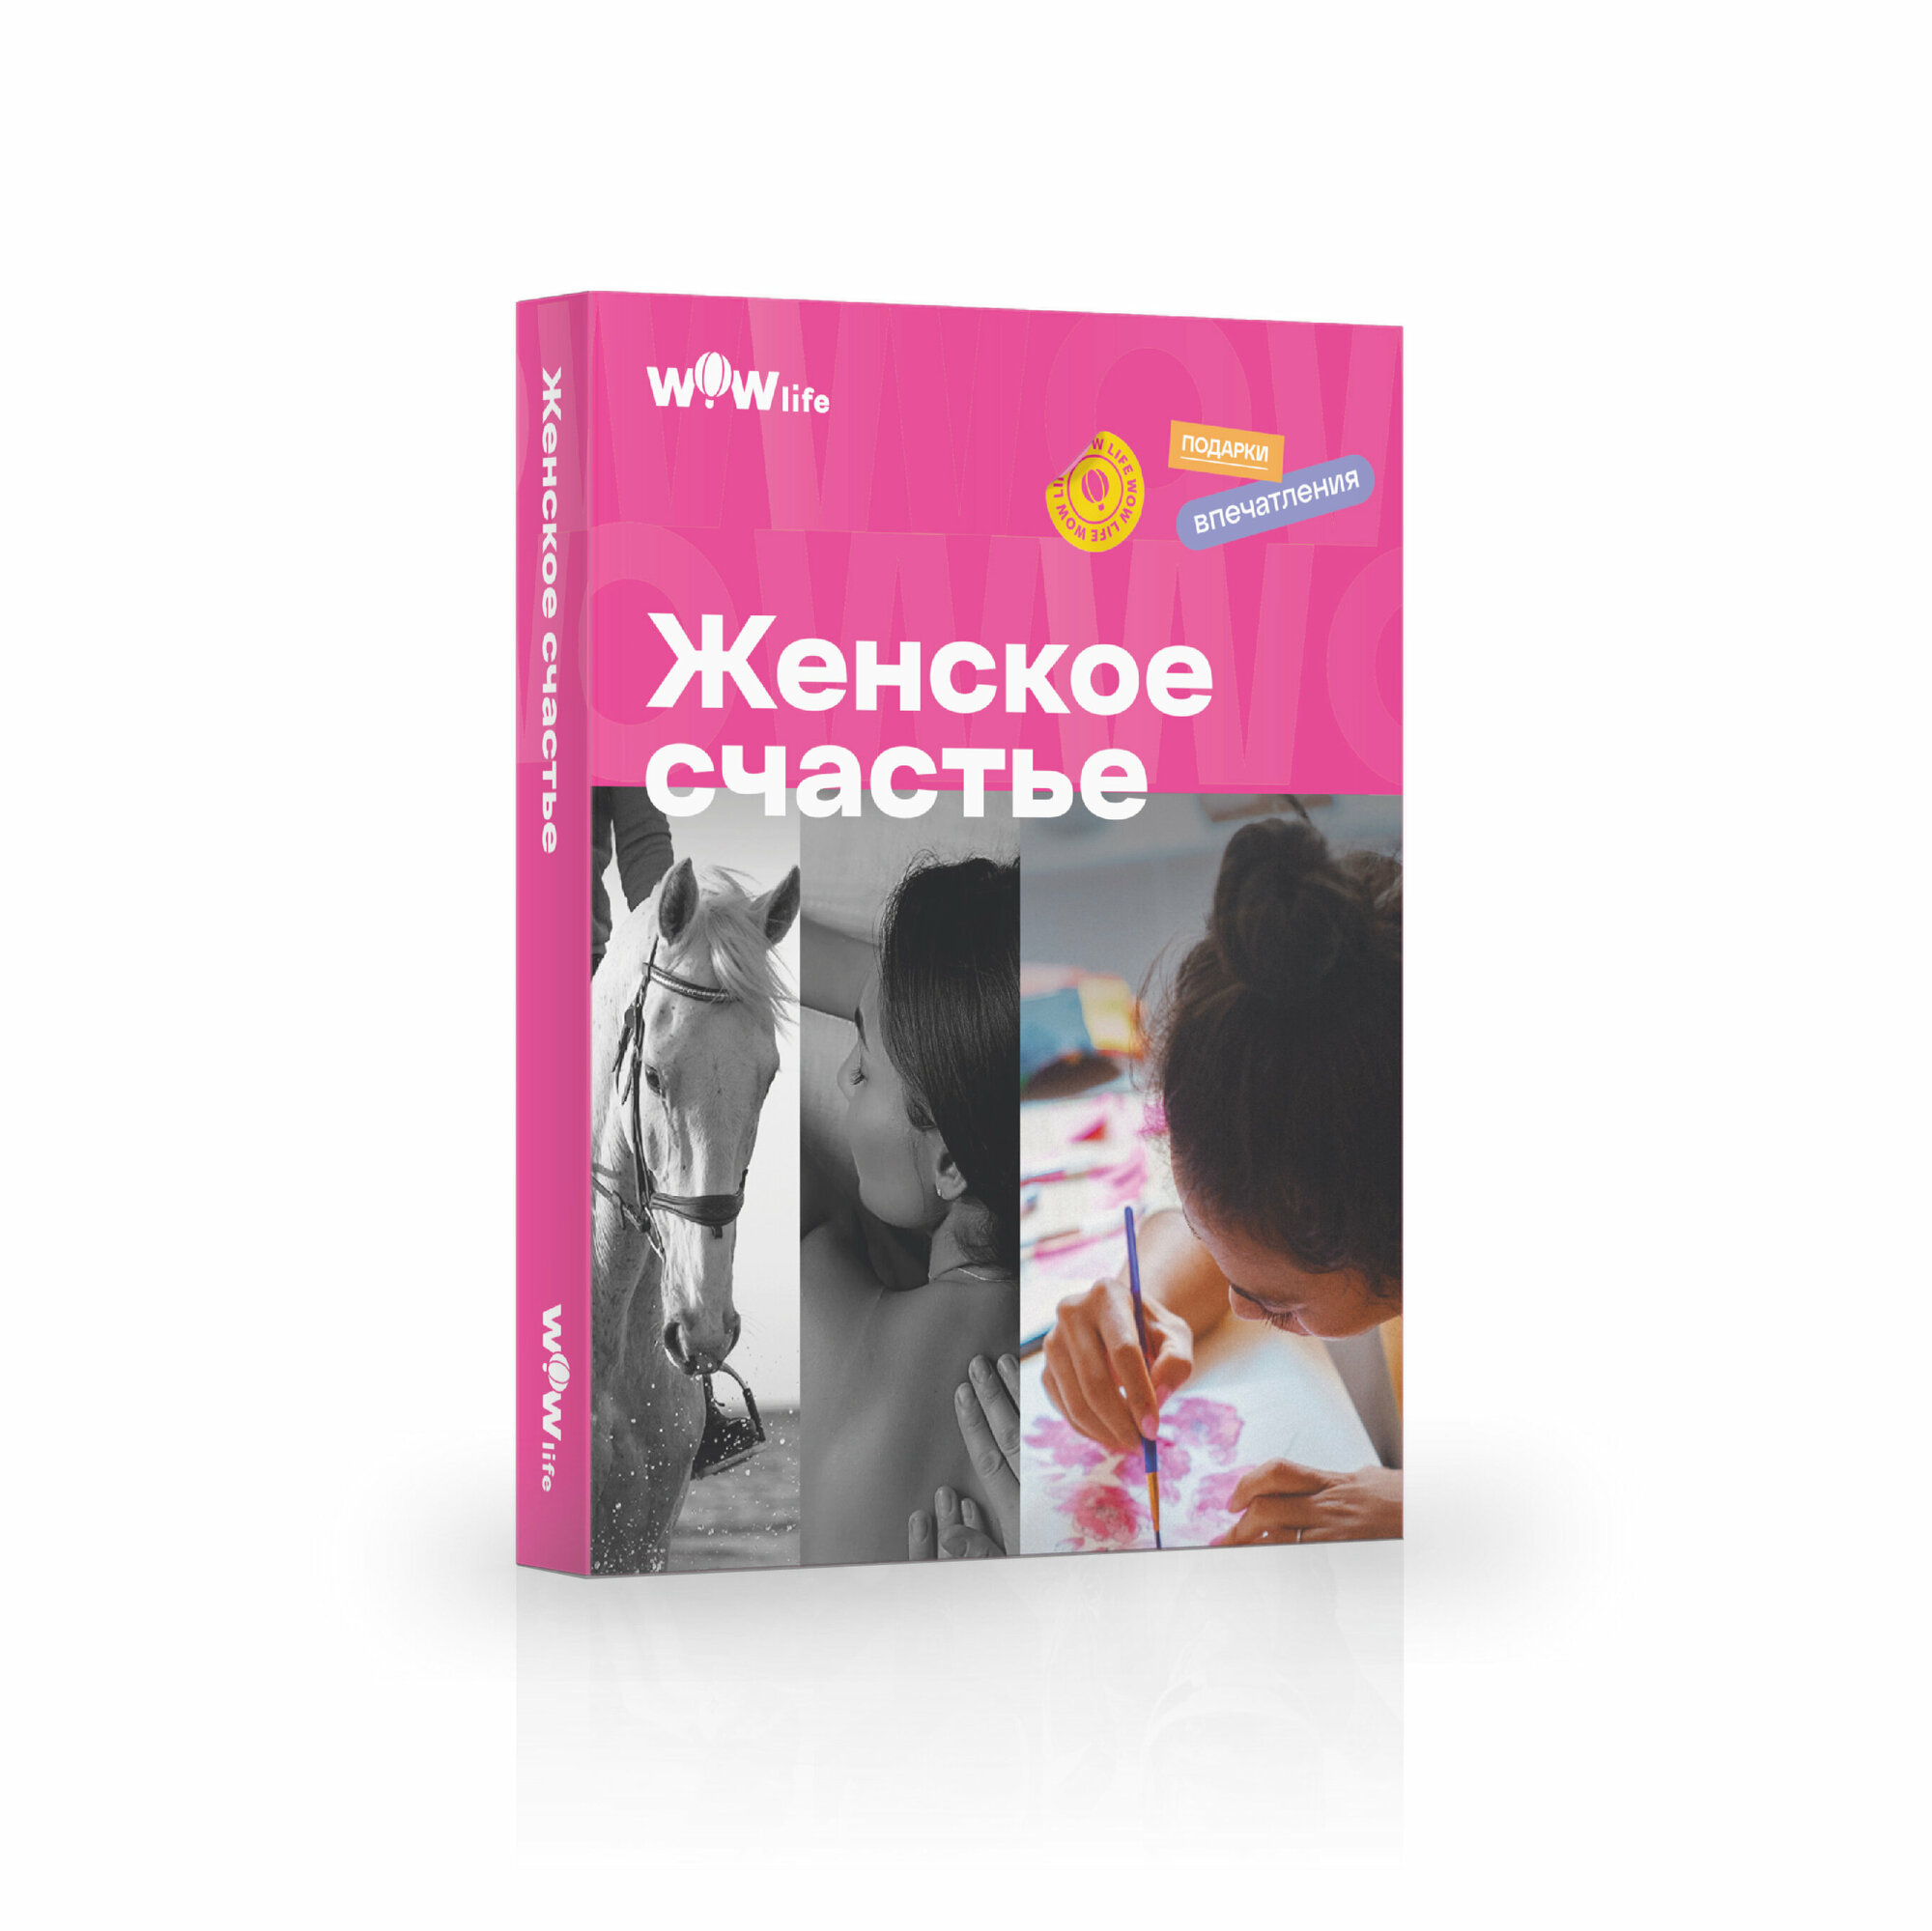 Подарочный сертификат WOWlife "Женское счастье" - набор из впечатлений на выбор, Санкт-Петербург